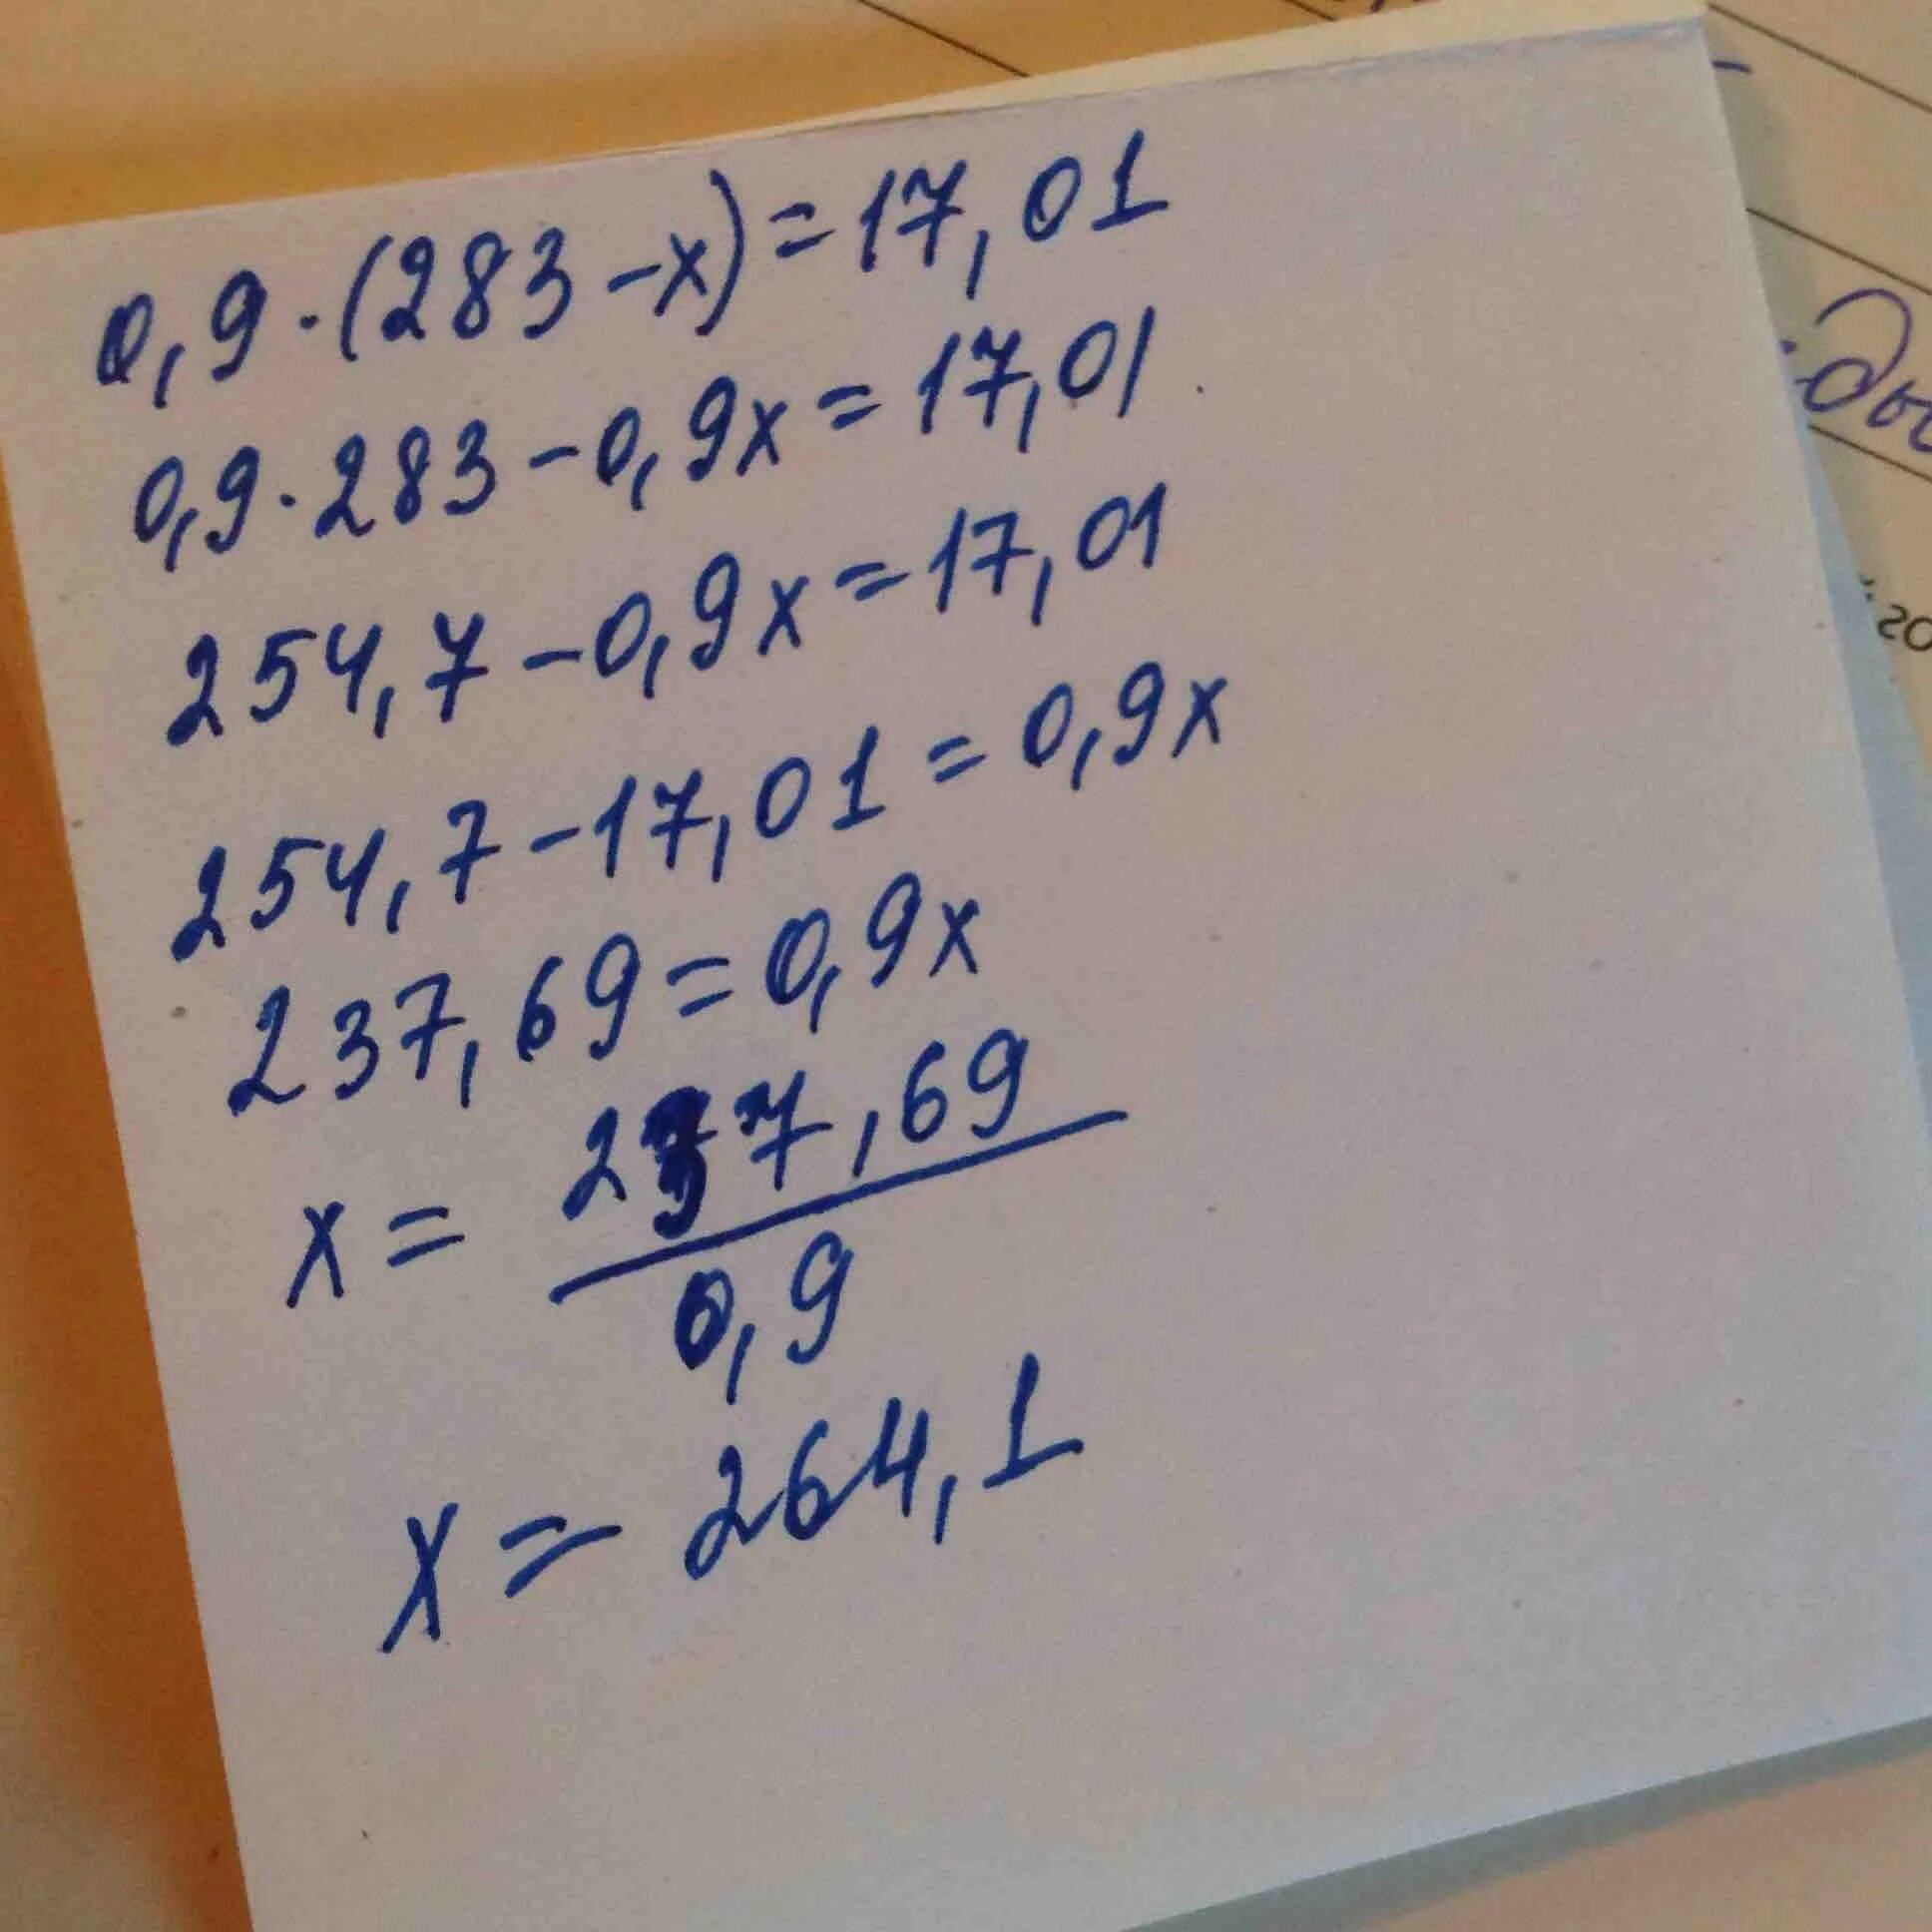 0,9(283-Х)=17,01. 0 9 283-X 17 01. (1/17)Х-1=17х. Как решить 0,9(283-x)=17,01.